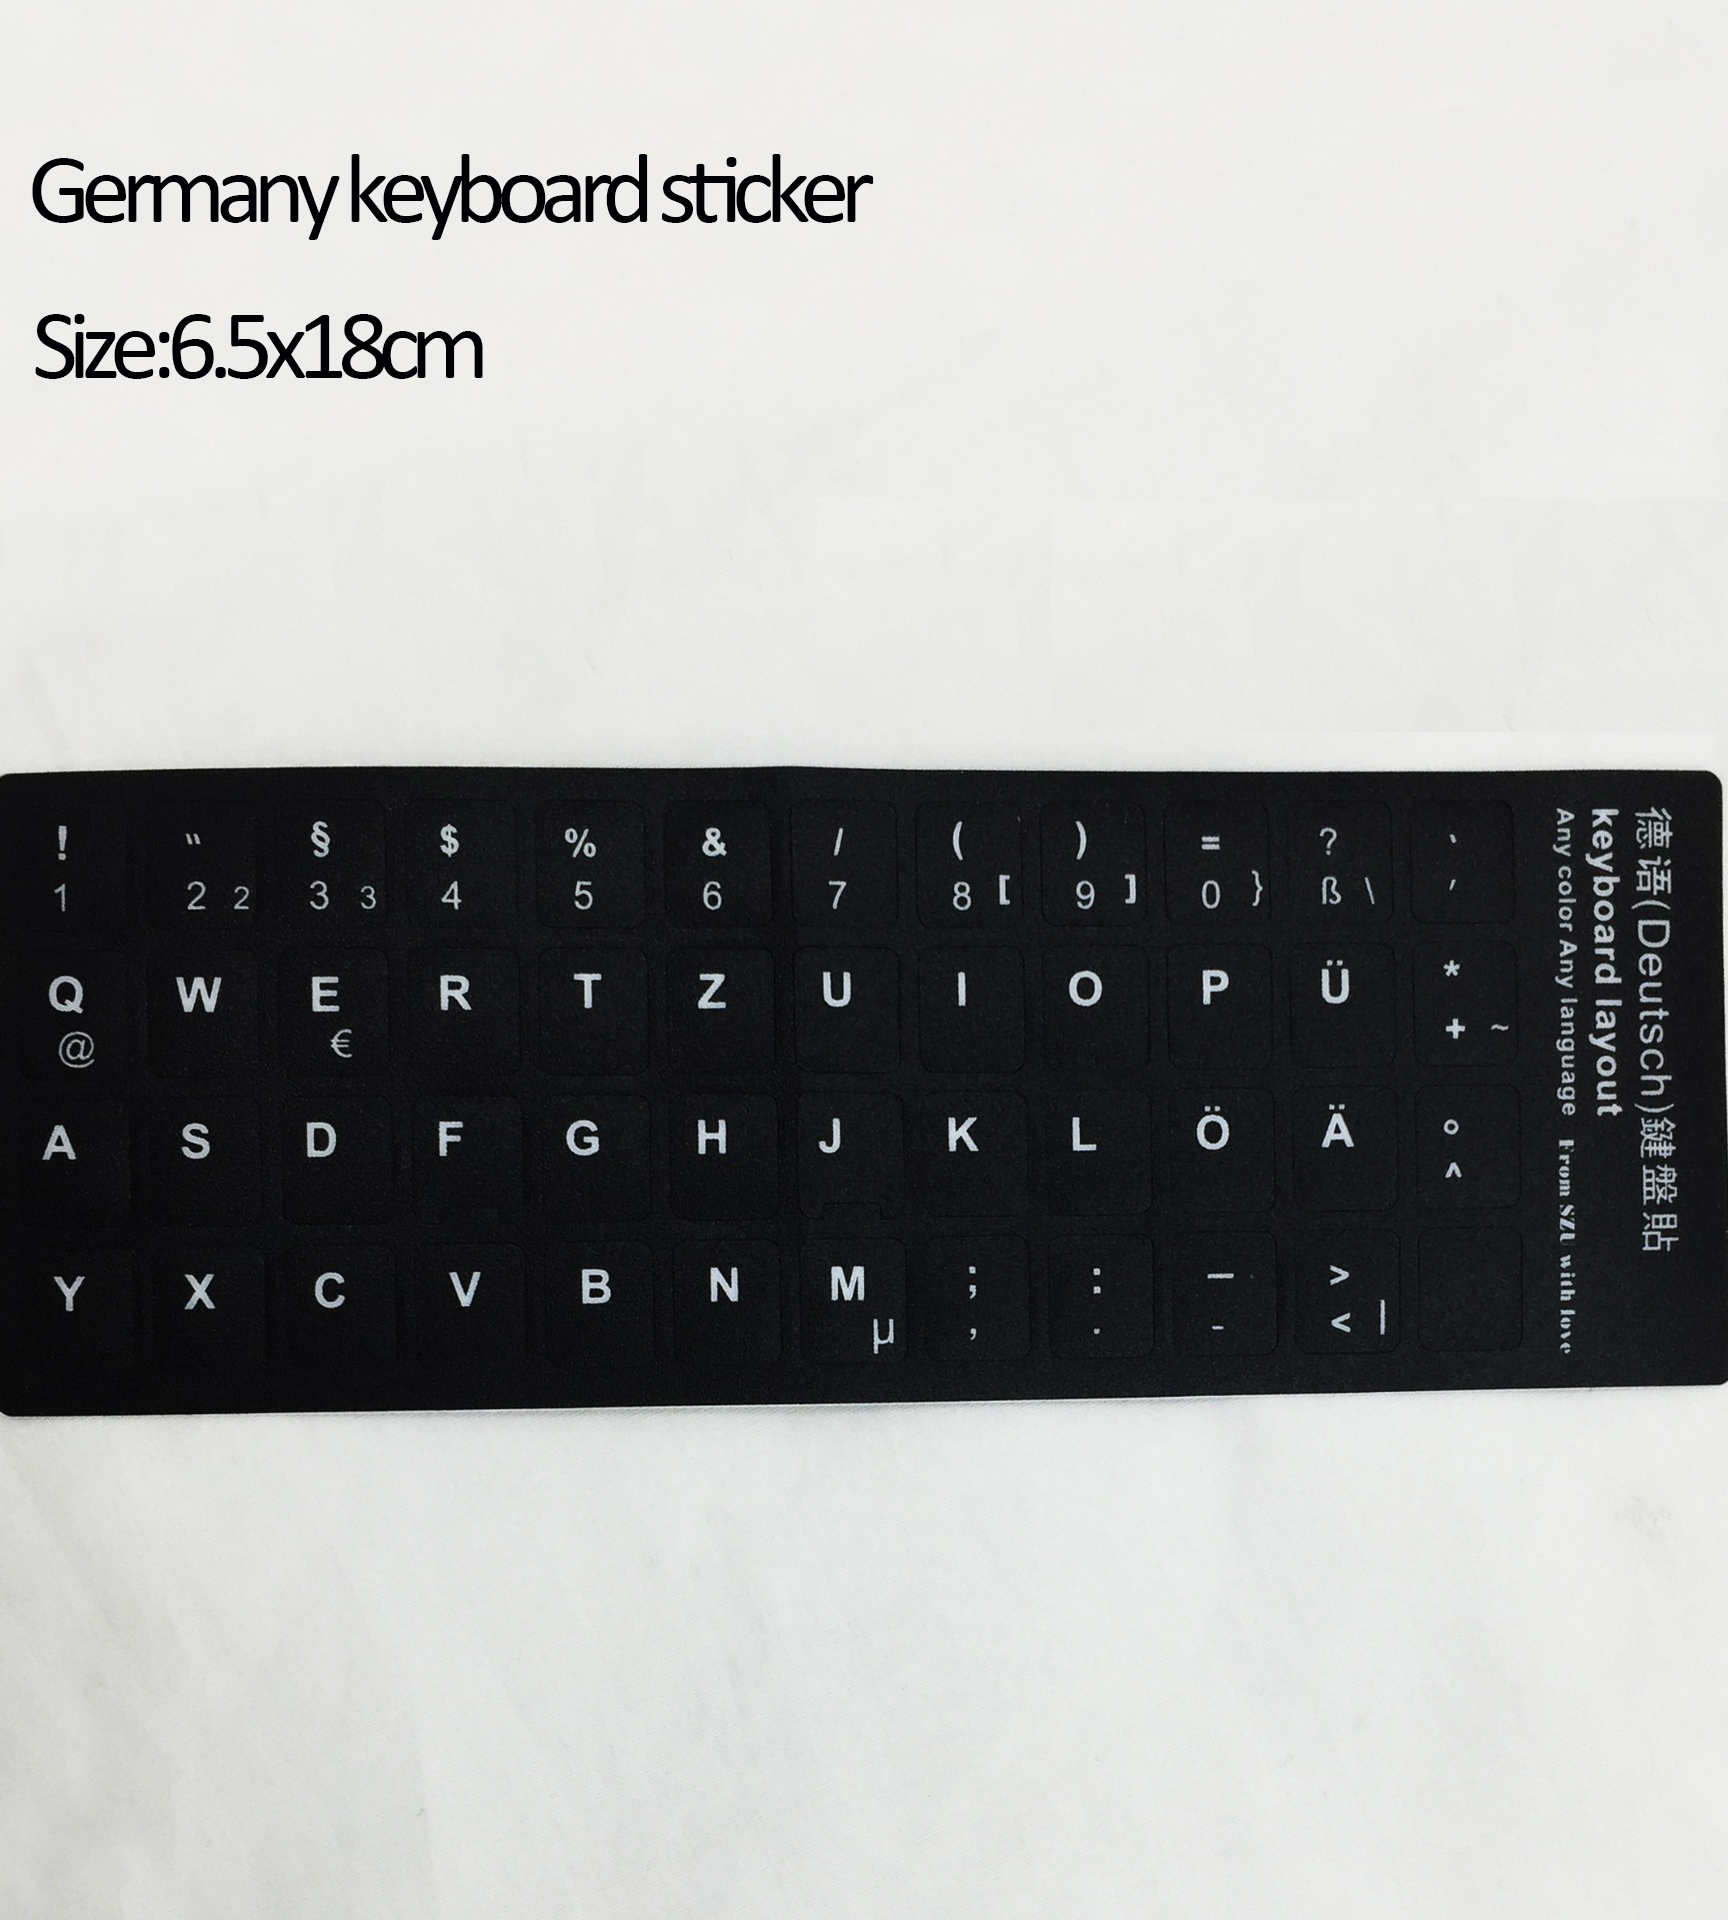 Naljepnice na tastaturi na engleskom jeziku | Providne naljepnice tastature